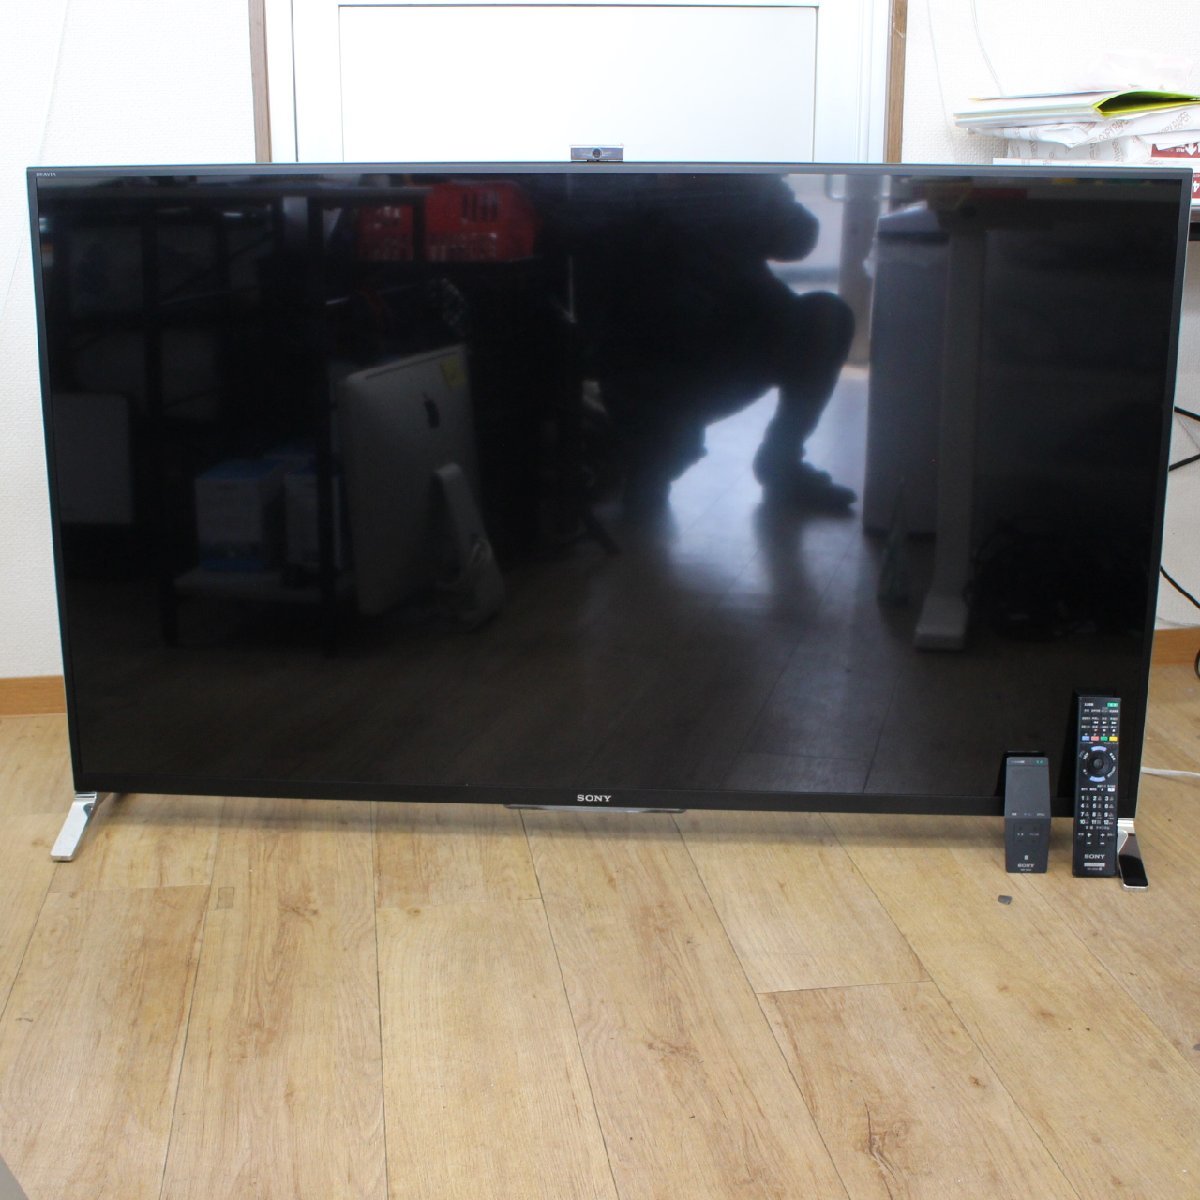 川崎市幸区にて ソニー 液晶テレビ KDL-55W950B 2015年製 を出張買取させて頂きました。